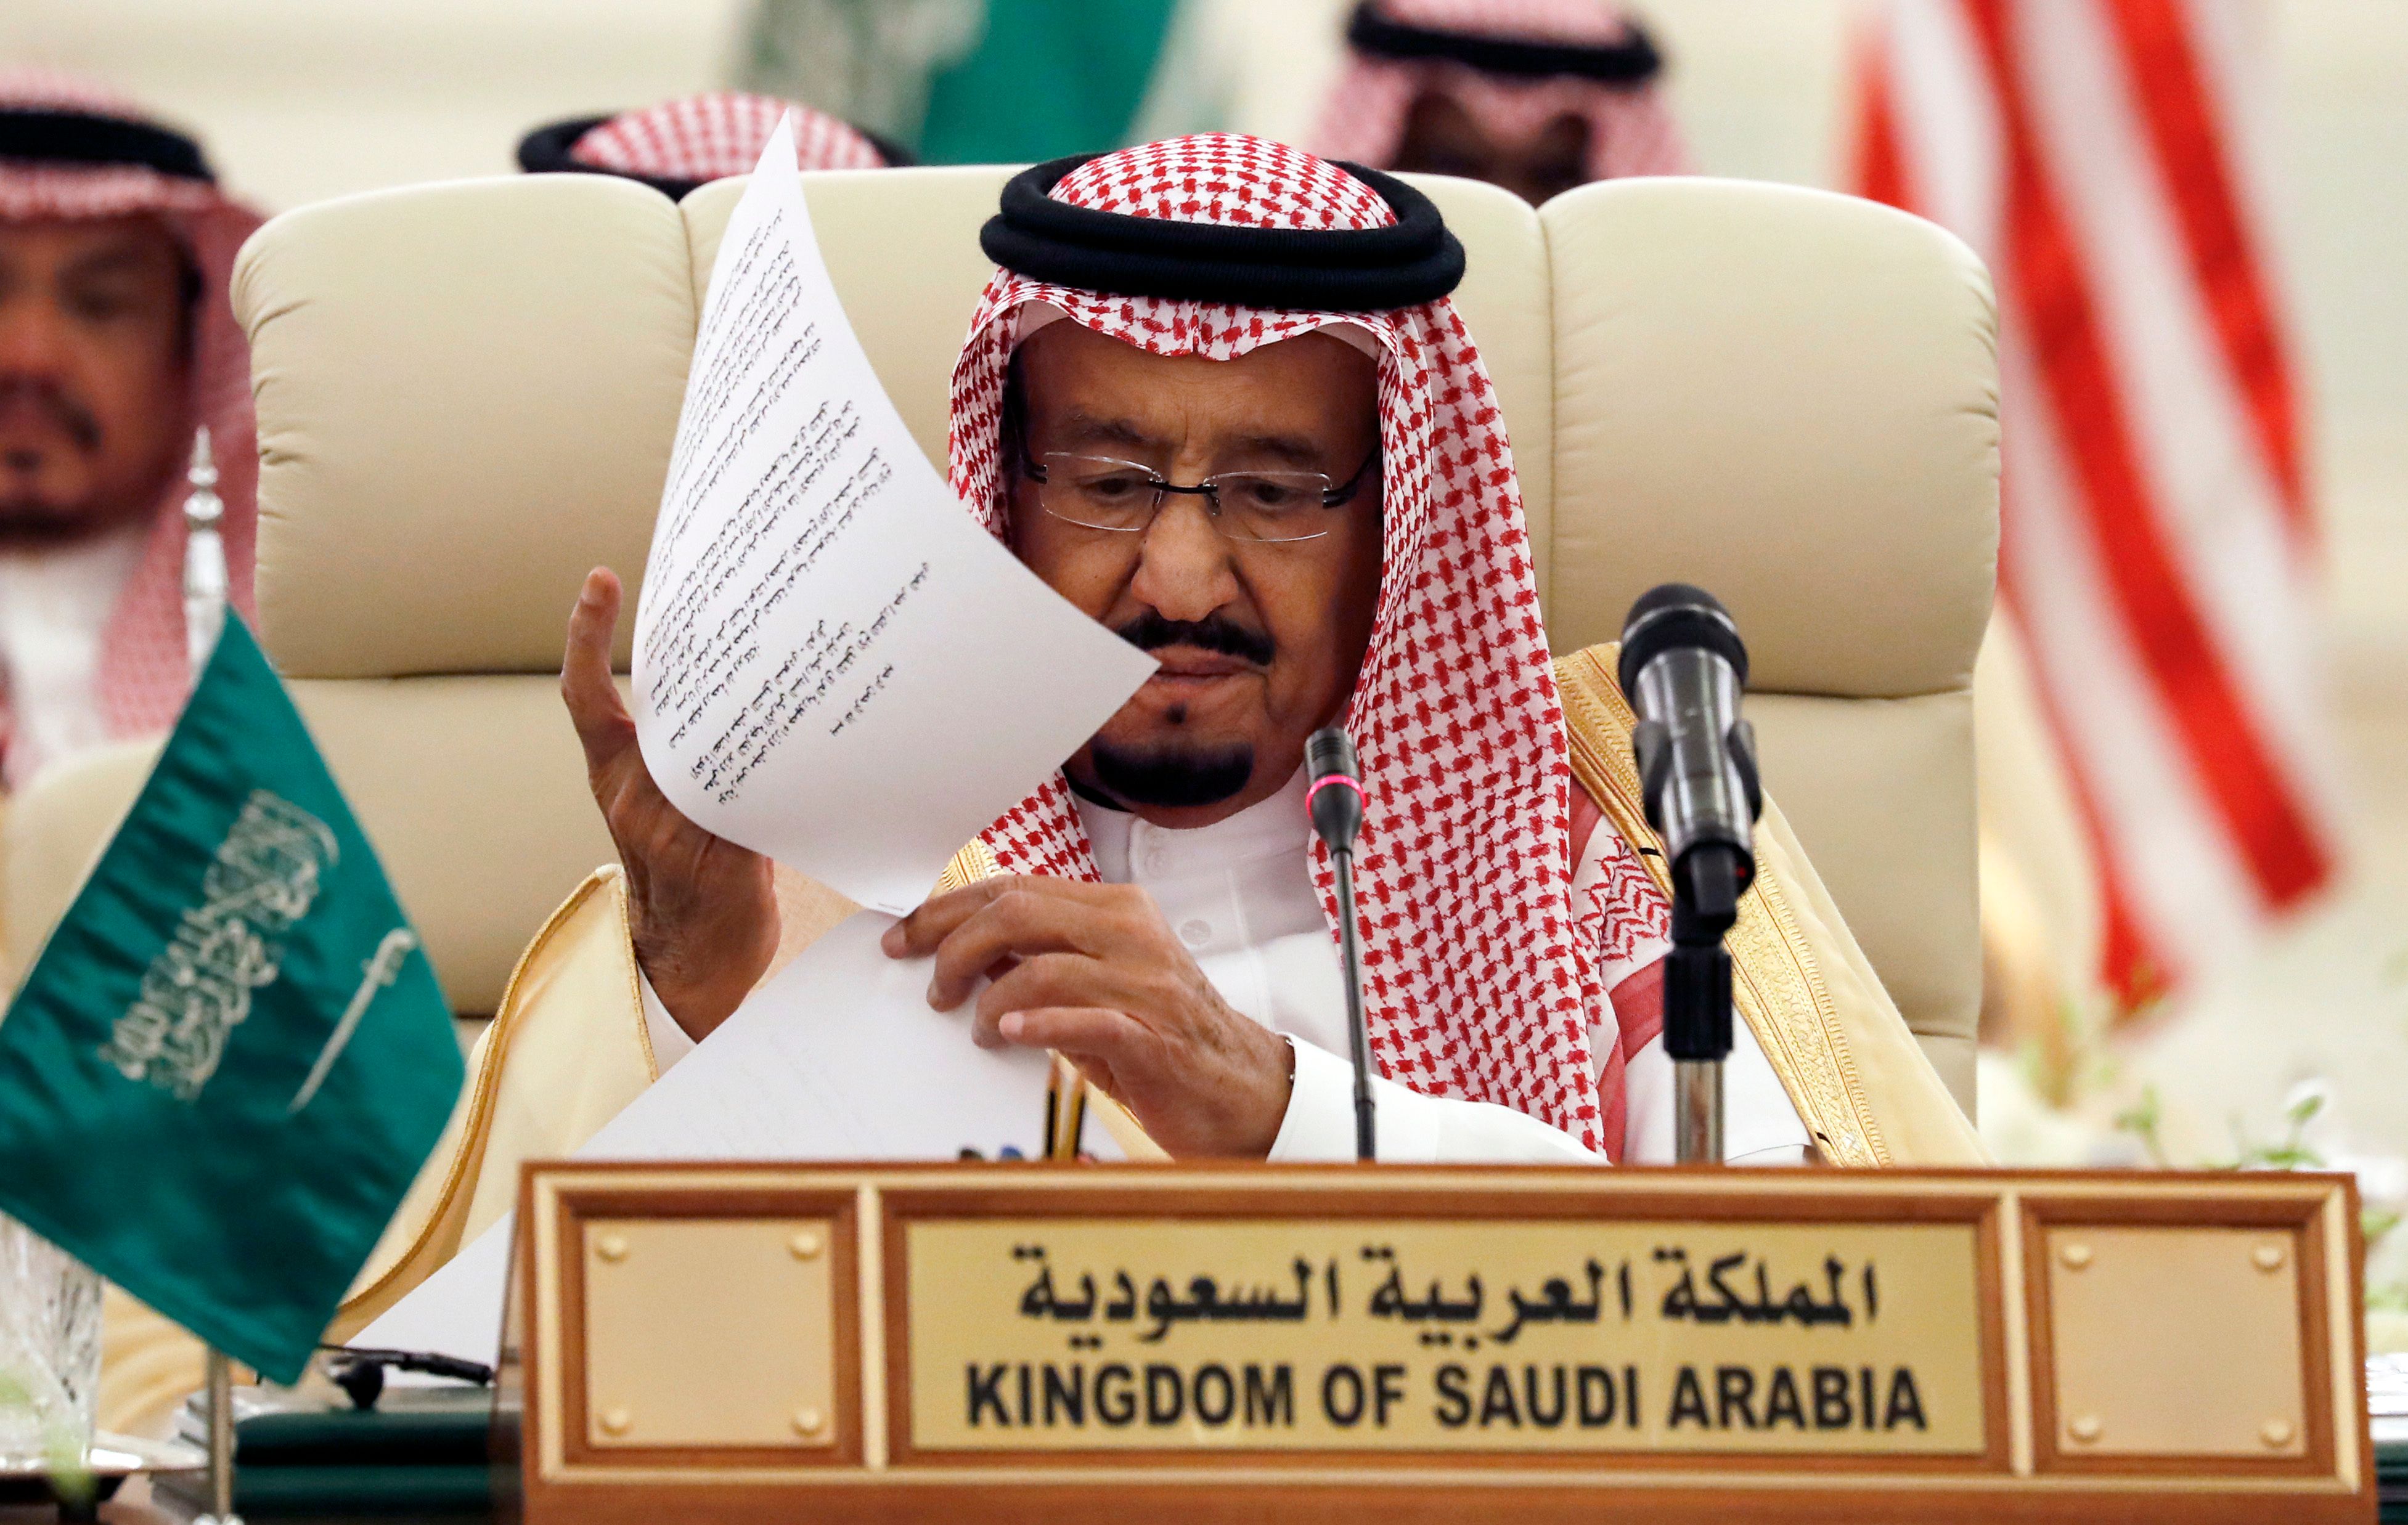 العاهل السعودى الملك سلمان بن عبد العزيز آل سعود